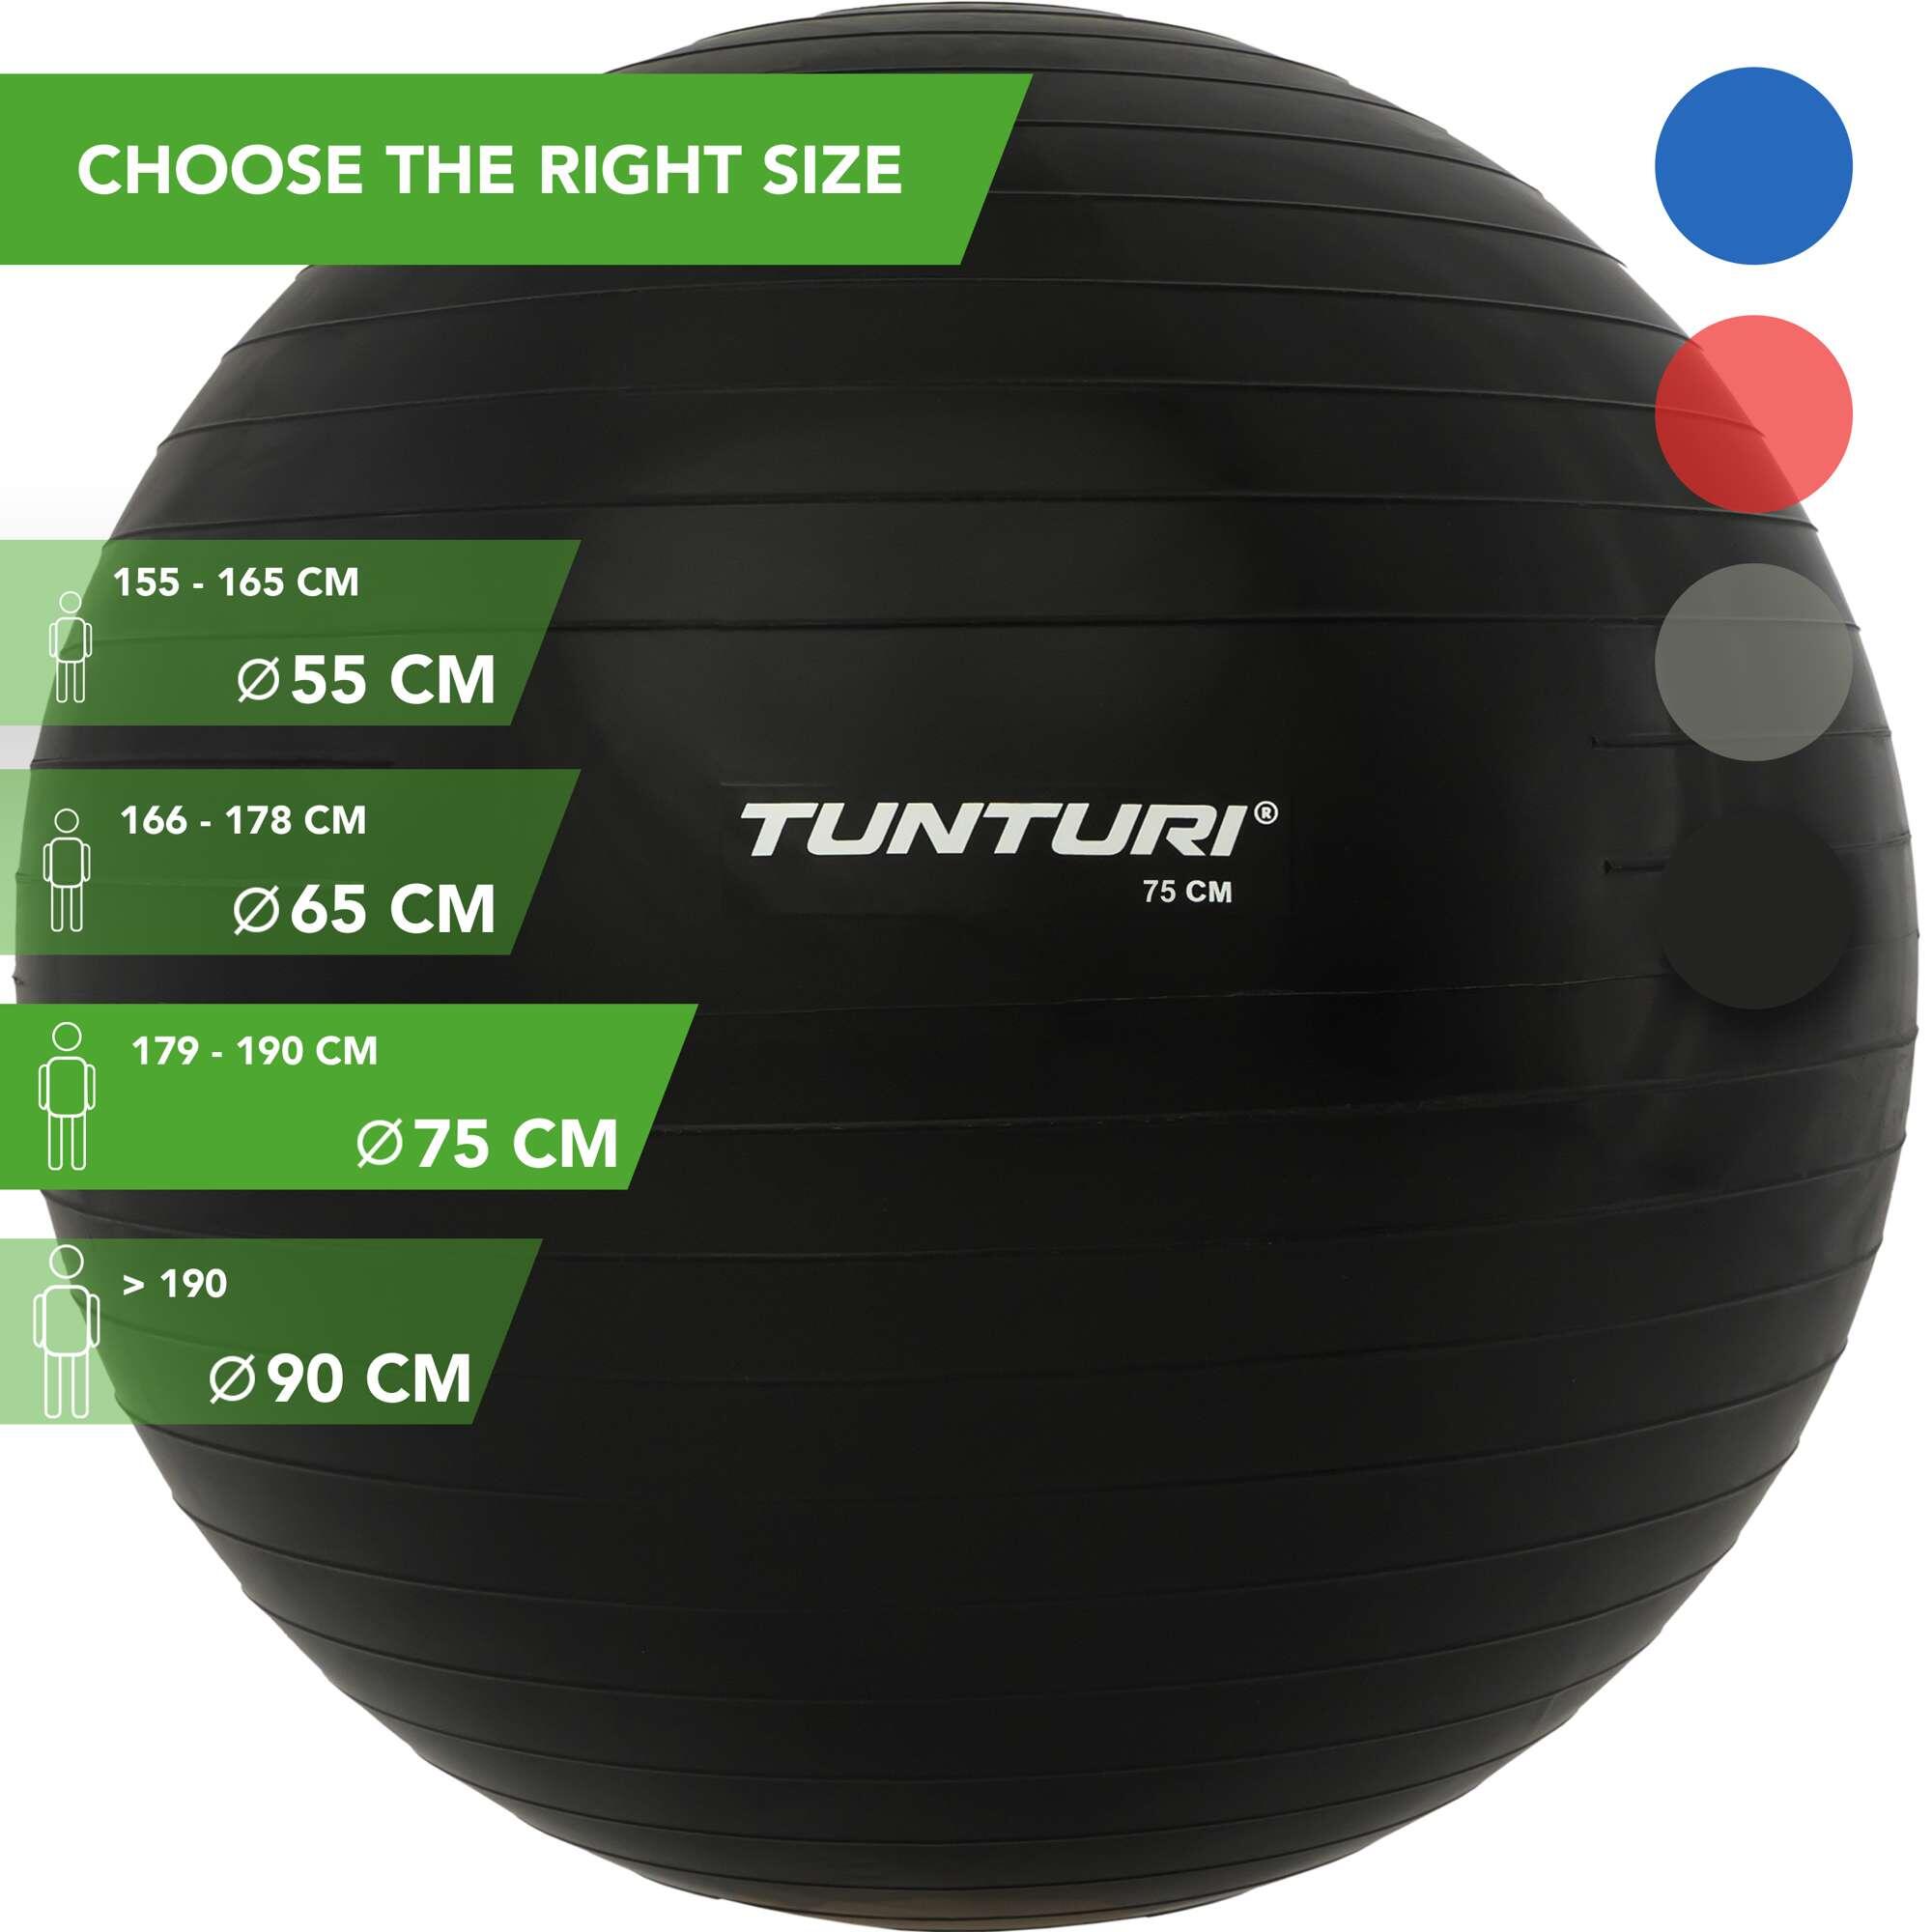 Мяч для фитнеса - мяч для упражнений - швейцарский мяч - с насосом TUNTURI, черный черный мяч для стингинга из пвх массаж акупунктура мяч для захвата гвоздь для ногтей мяч для йоги мяч для фитнеса мяч для ежа